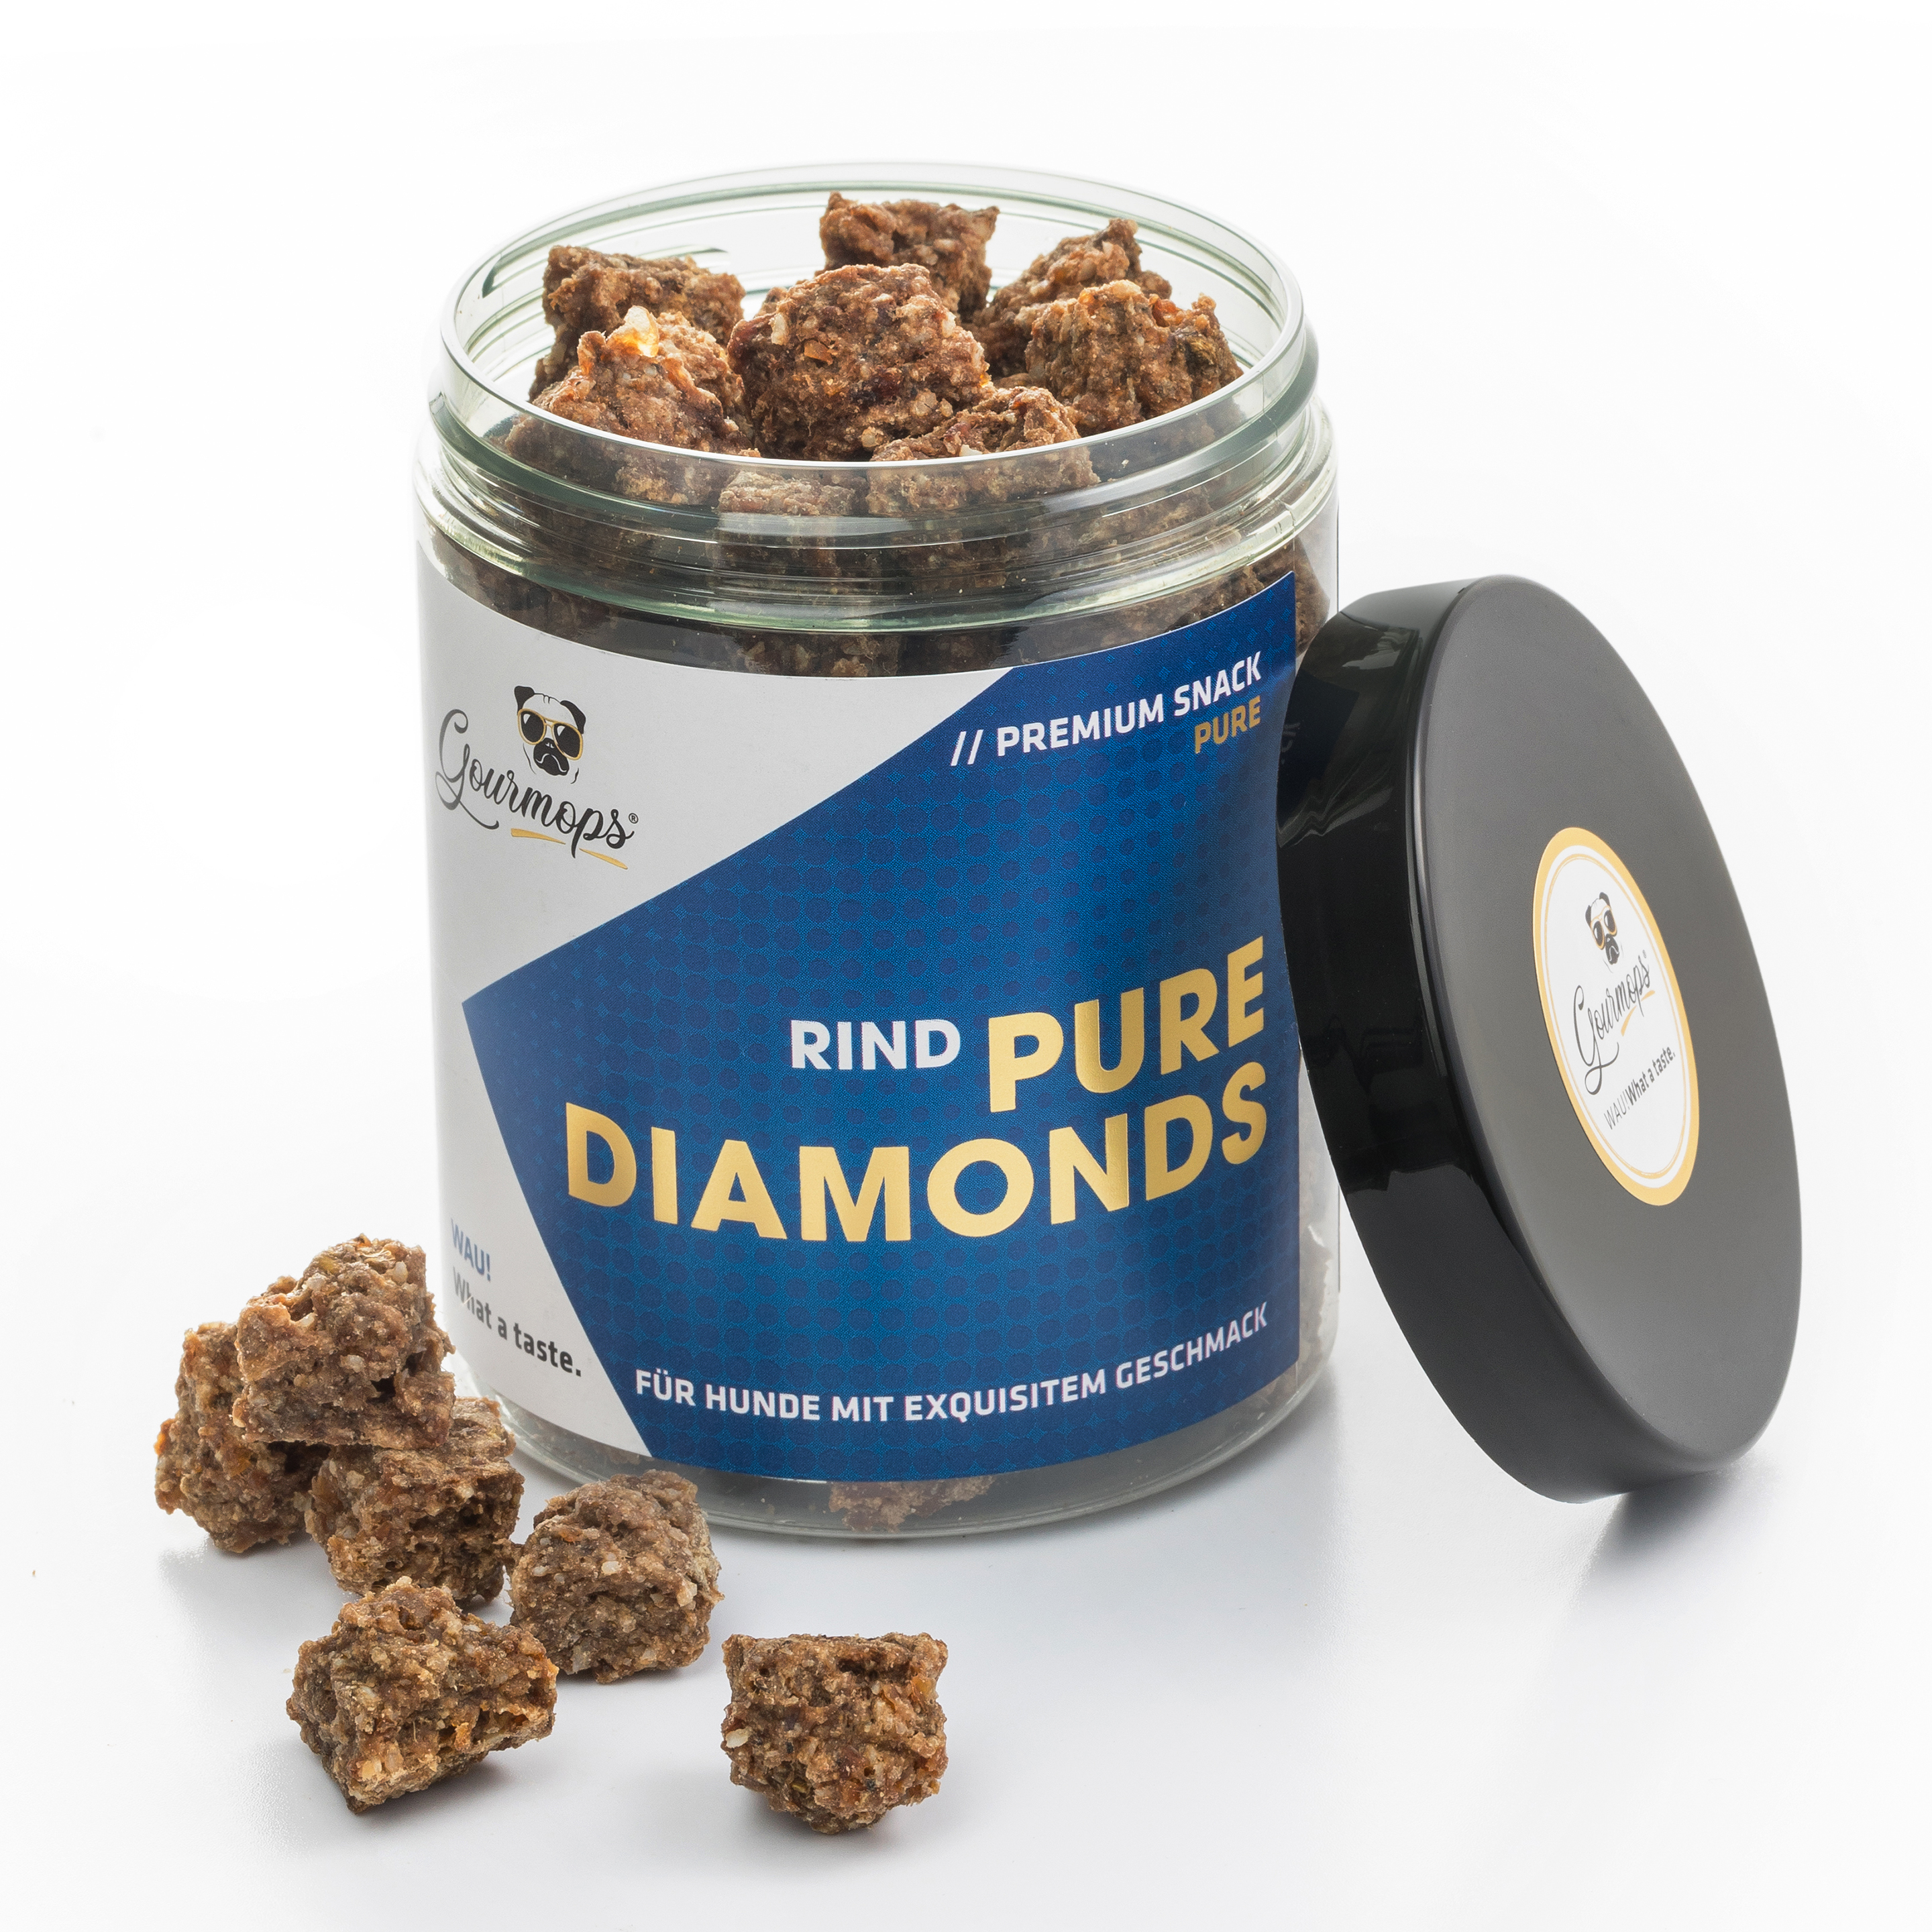 Dose Pure Diamonds Rind mit offenem Deckel und Inhalt sichtbar